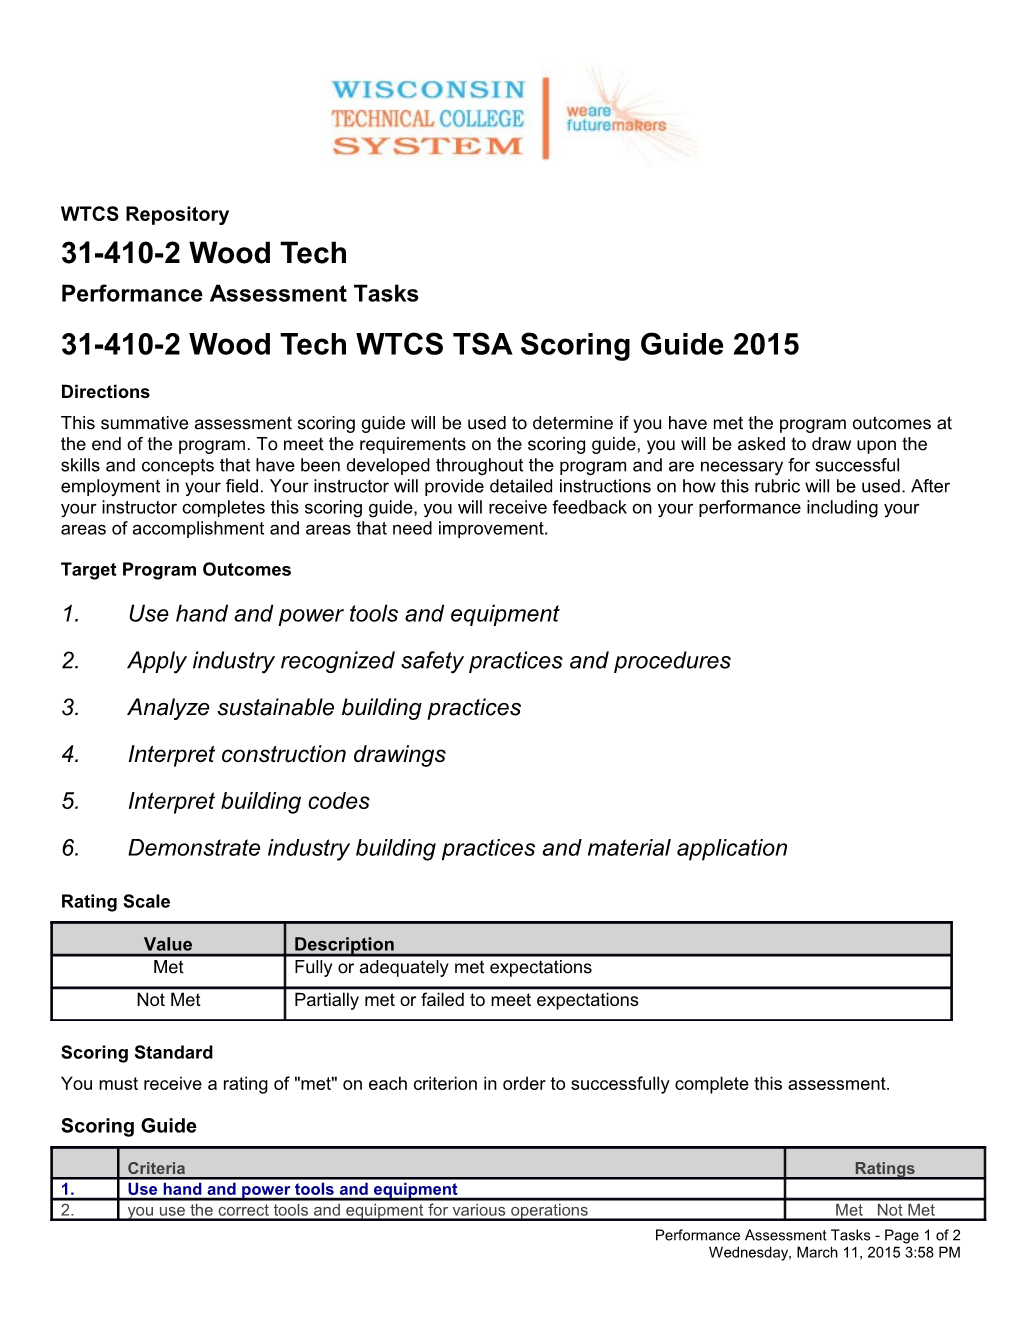 31-410-2 Wood Tech WTCS TSA Scoring Guide 2015